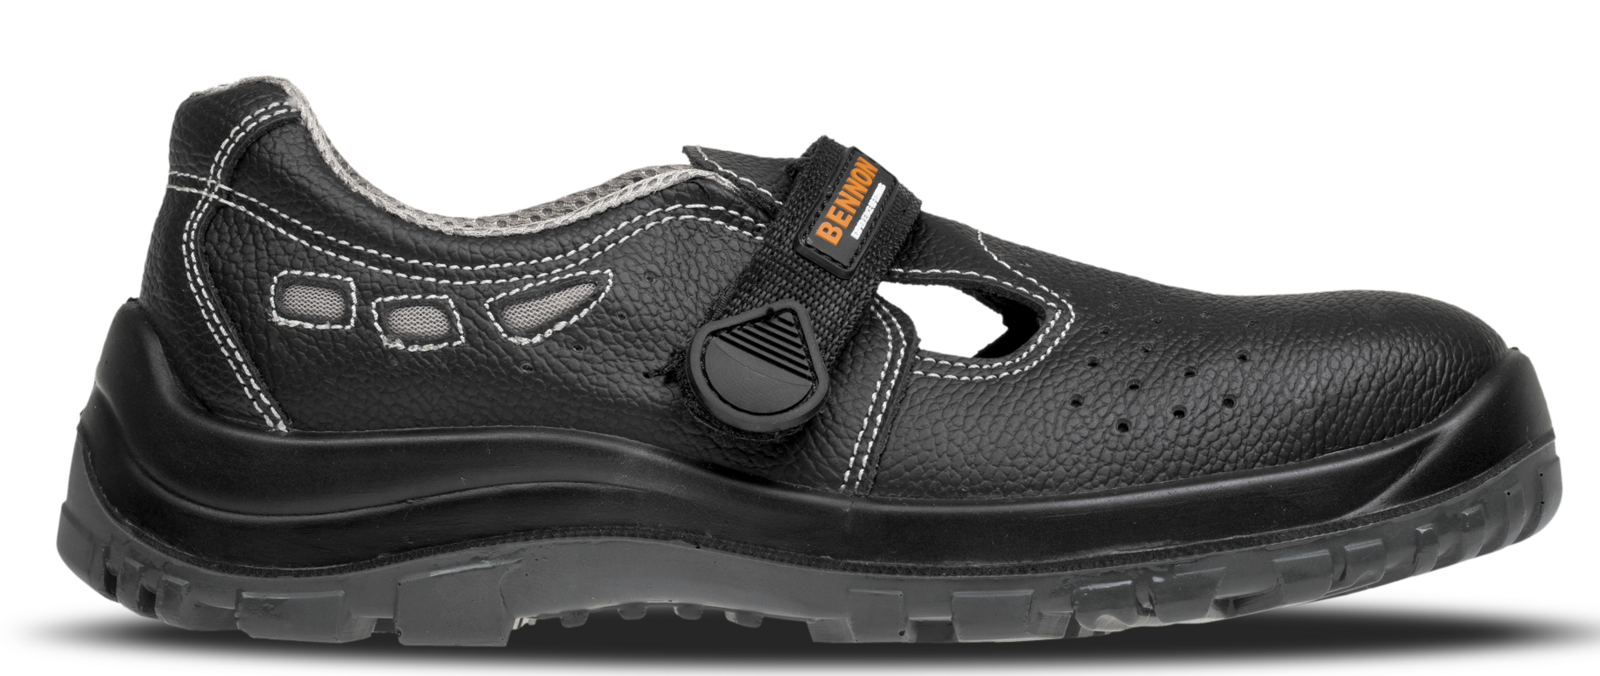 Bezpečnostné sandále Bennon Basic S1 - veľkosť: 42, farba: čierna